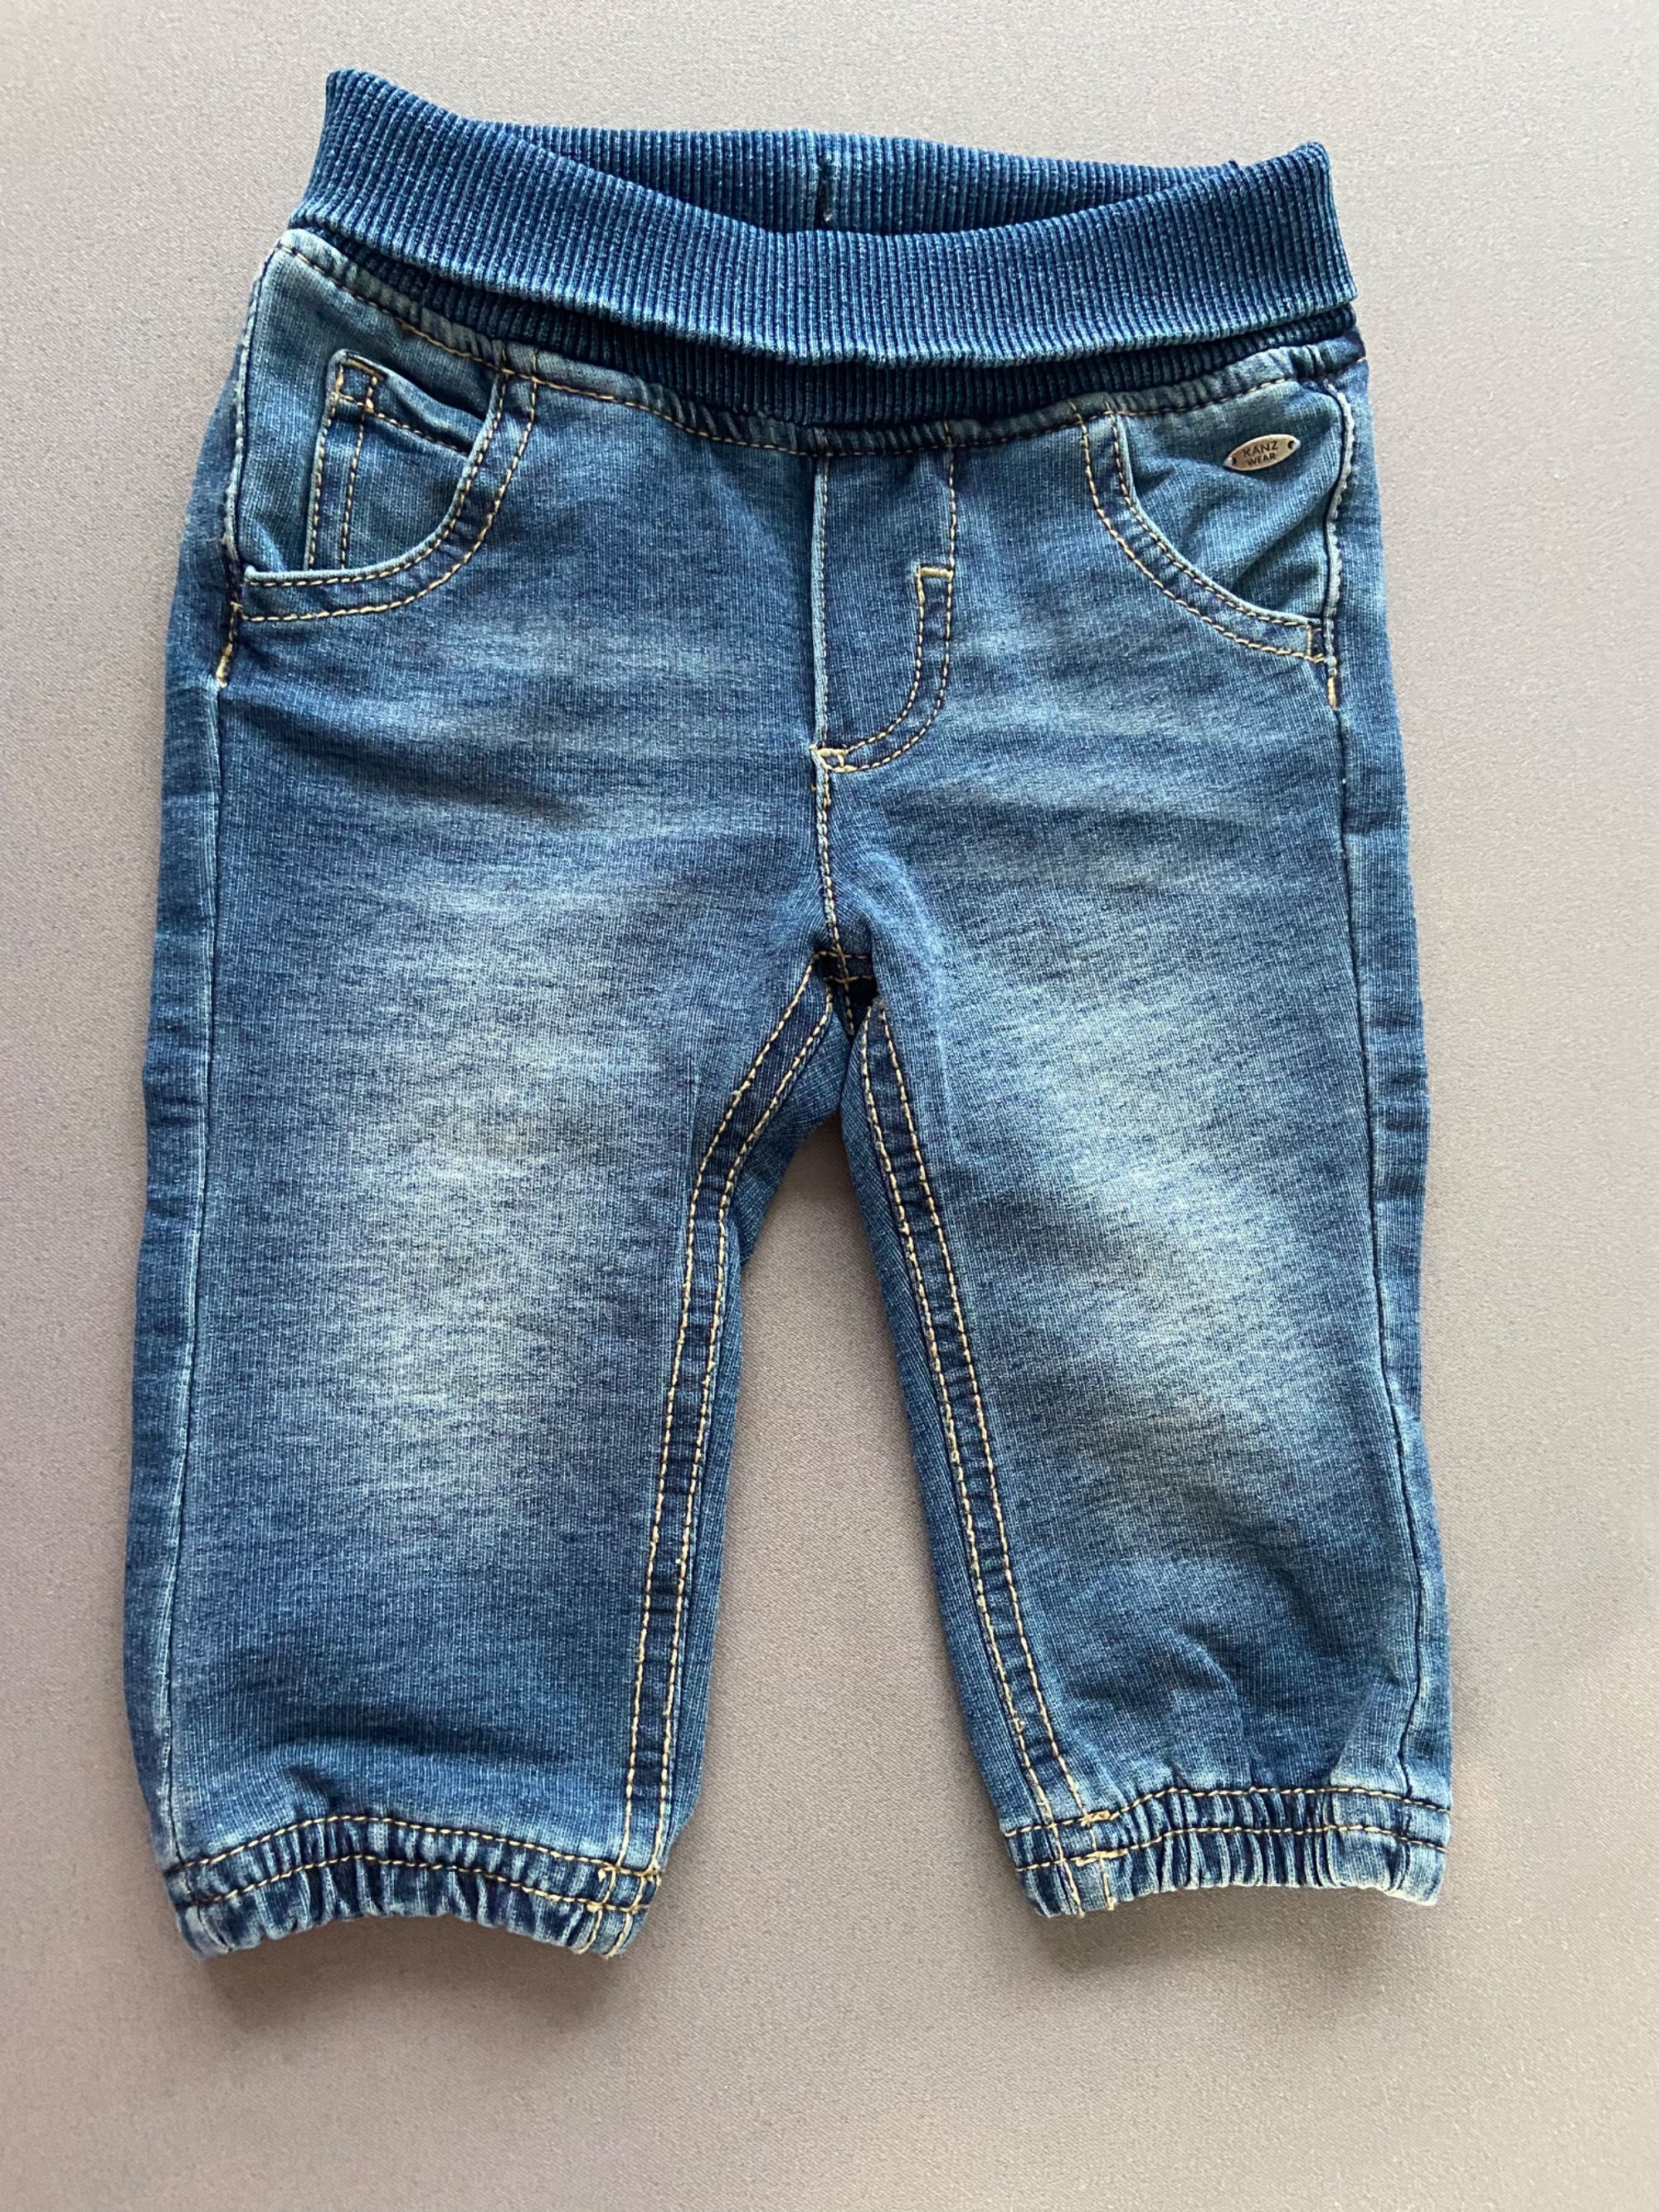 Ubranka dla chłopca koszulobody body eleganckie jeansy rozmiar 62/68